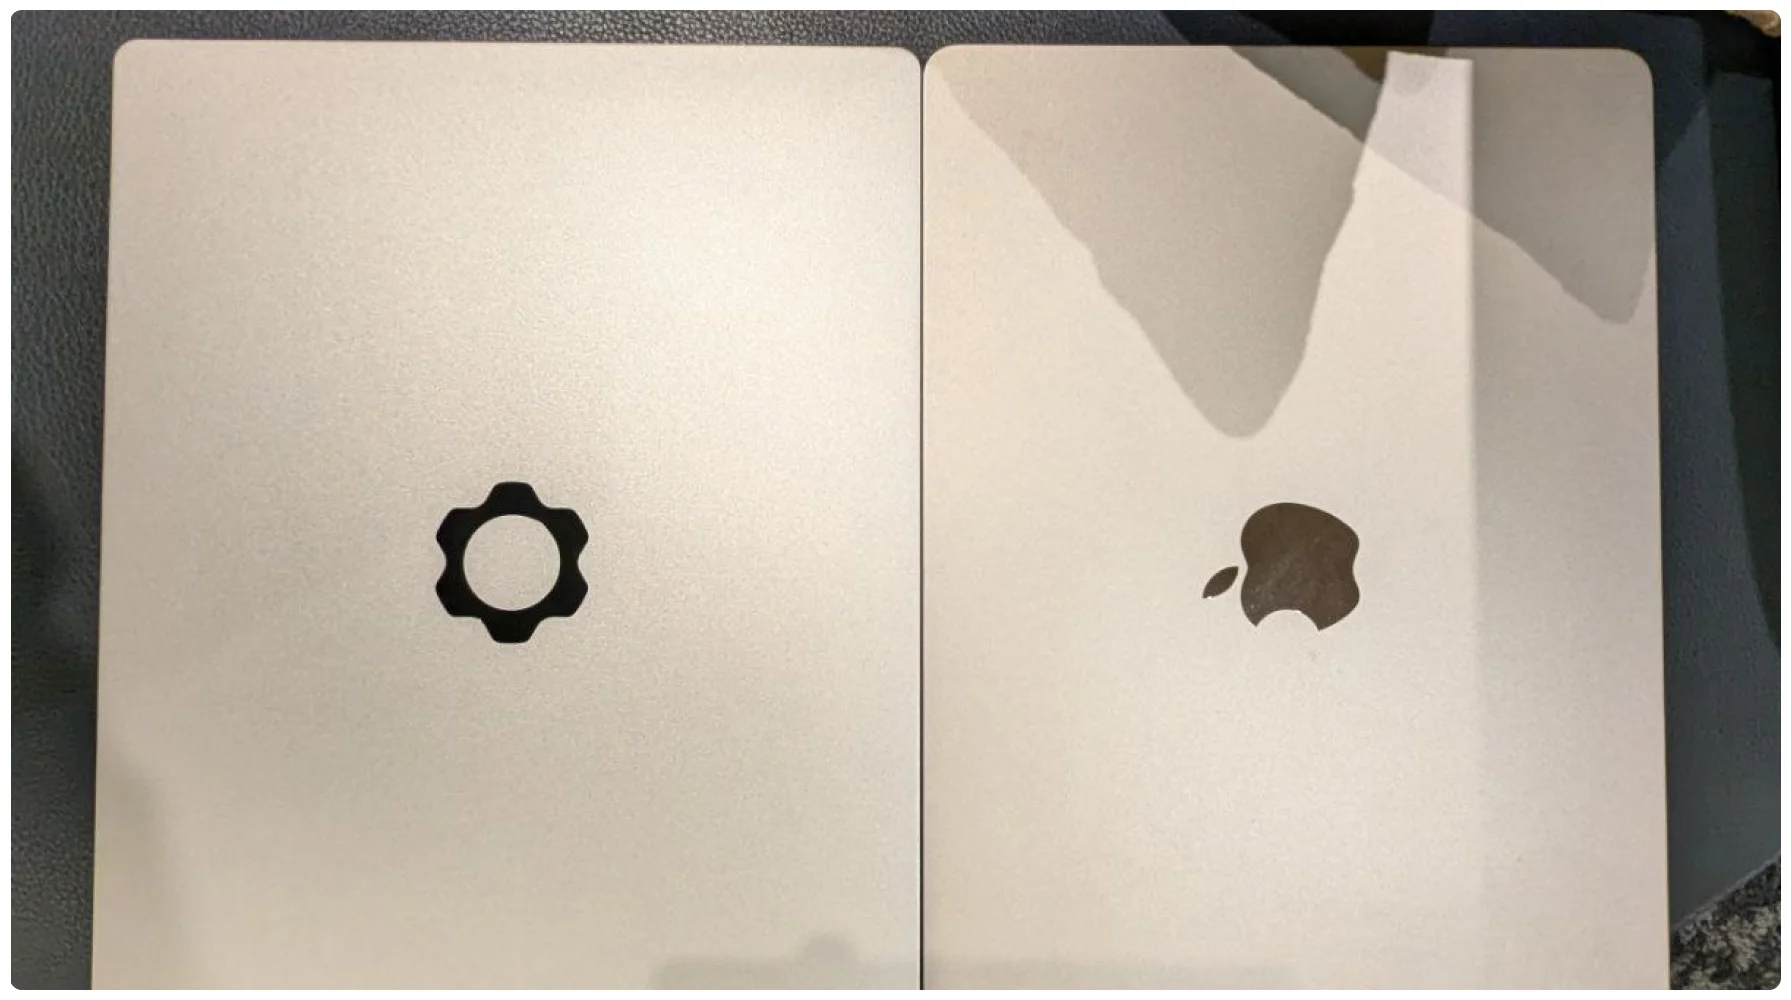 左 Framework，右 Macbook Air